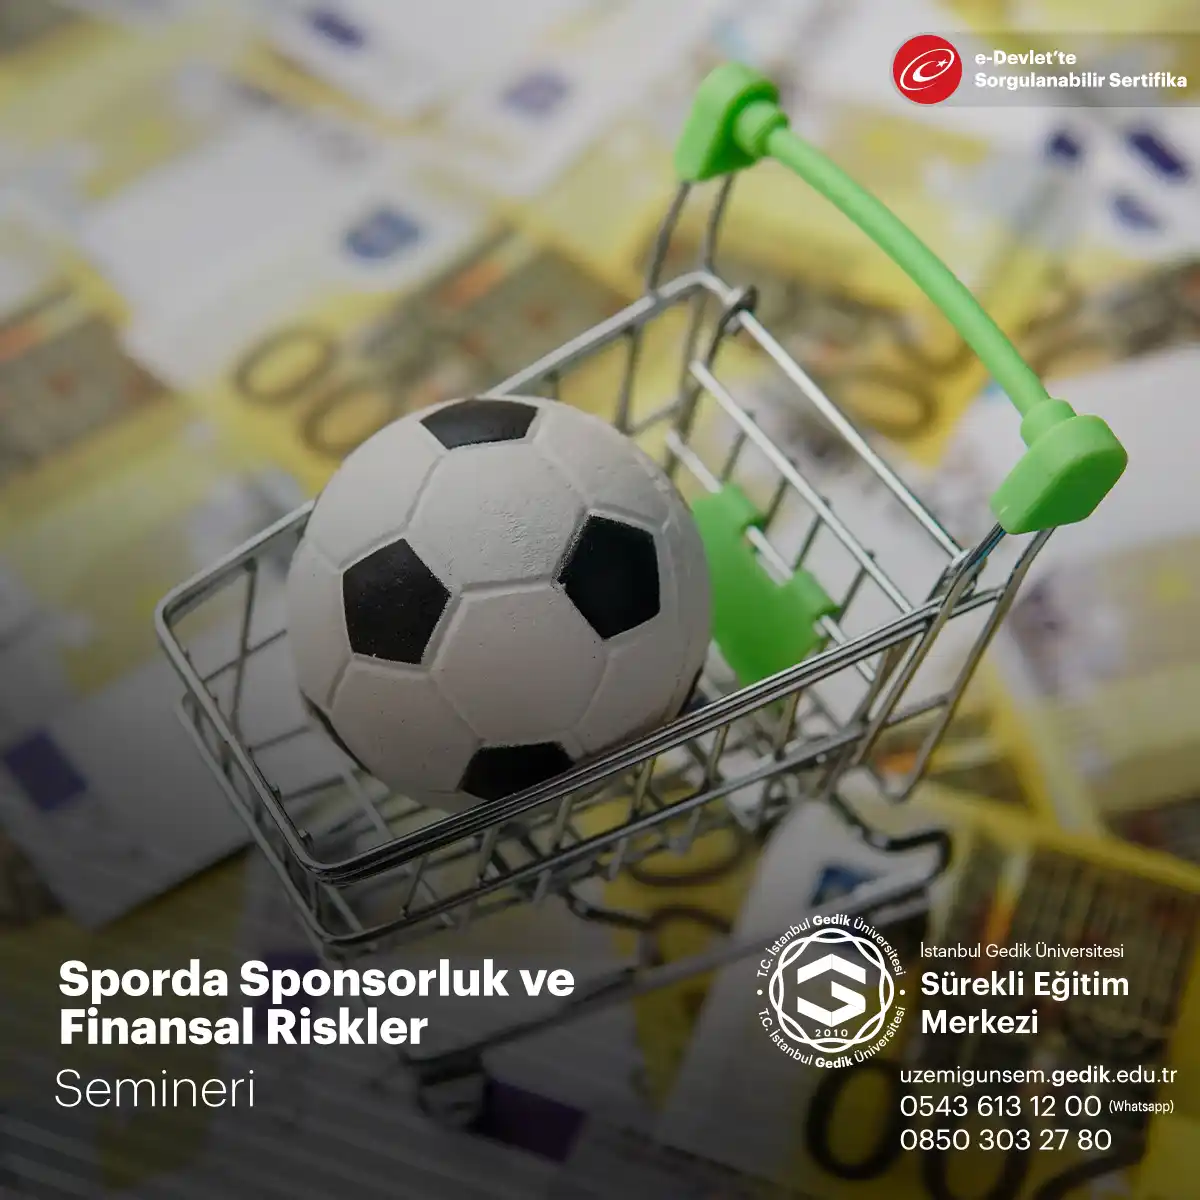 Sporda sponsorluk, hem spor kulüpleri ve organizasyonları hem de markalar için önemli bir pazarlama stratejisidir.